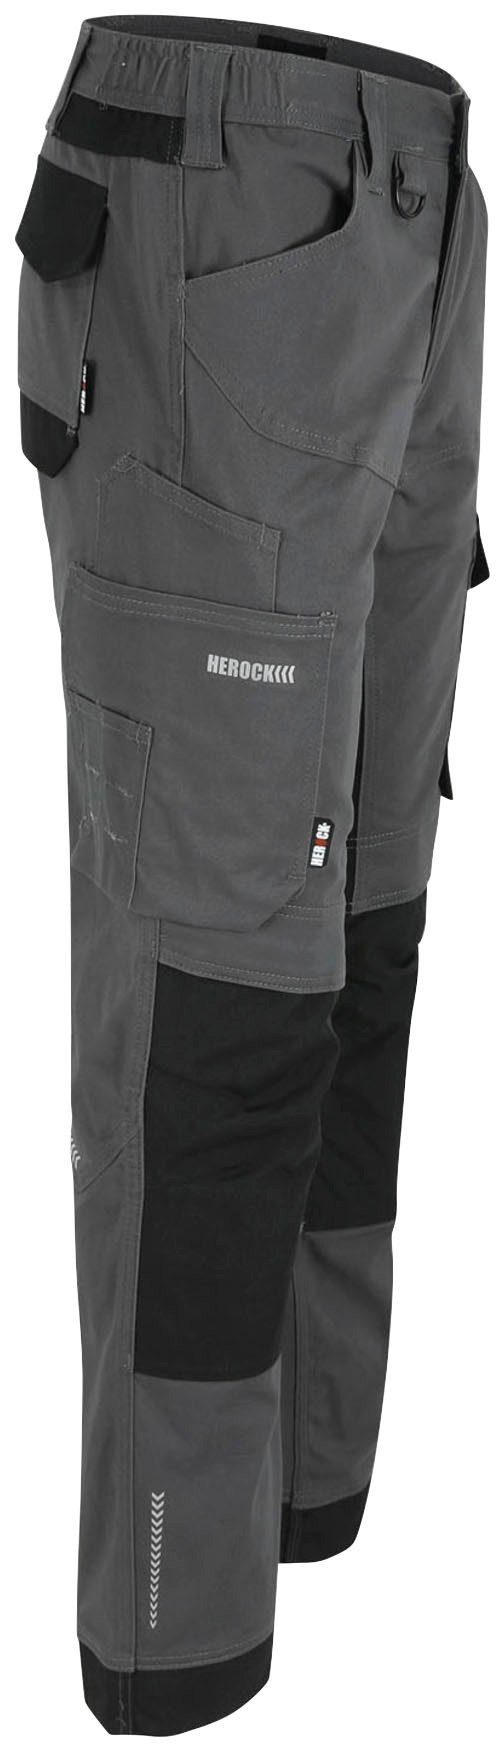 Herock Stretch, Arbeitshose weich Baumwolle, Multi-pocket, XENI wasserabweisend, bequem grau und